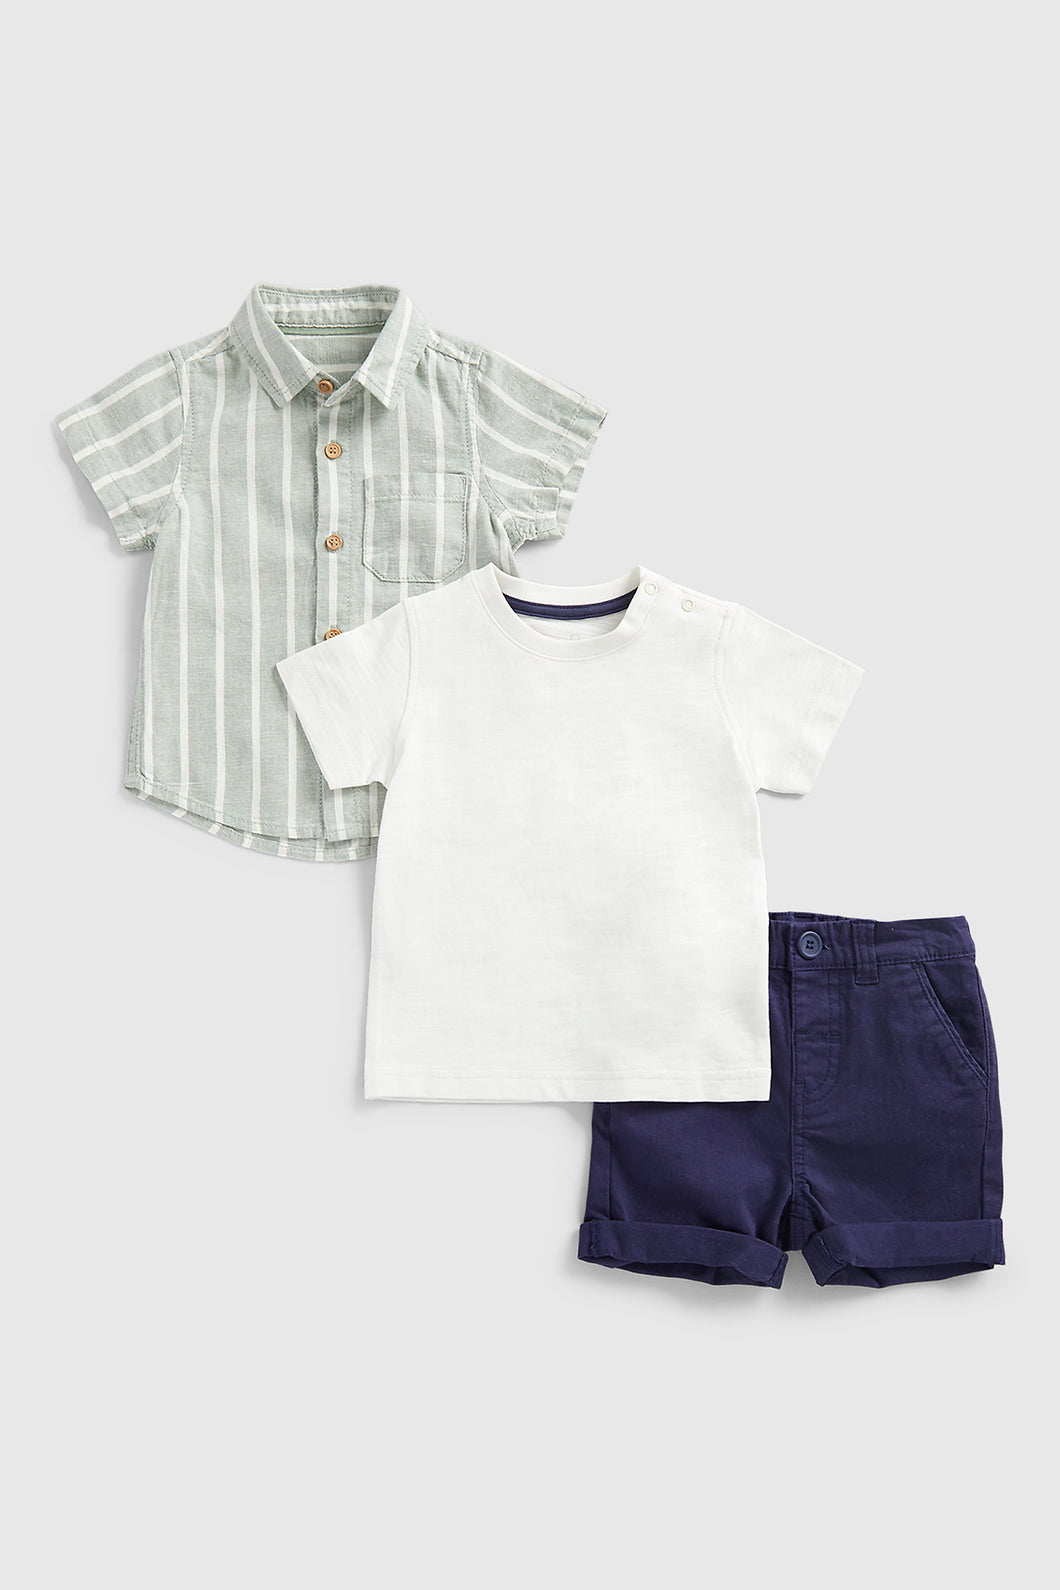 Mothercare Shirt, Shorts And T-Shirt Set